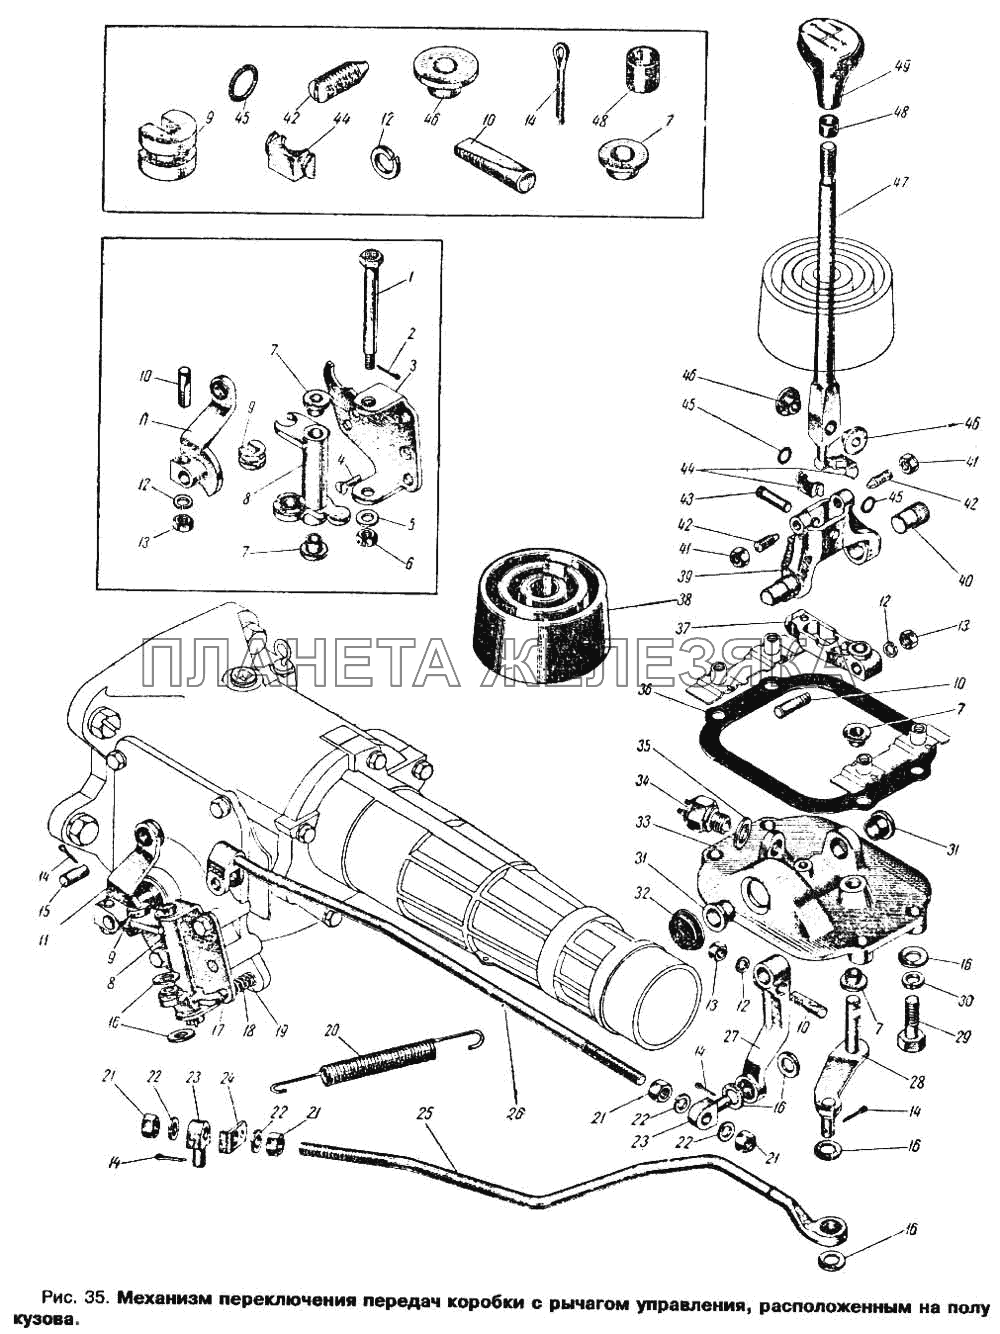 Механизм переключения передач коробки передач с рычагом управления, расположенным на полу кузова Москвич 412